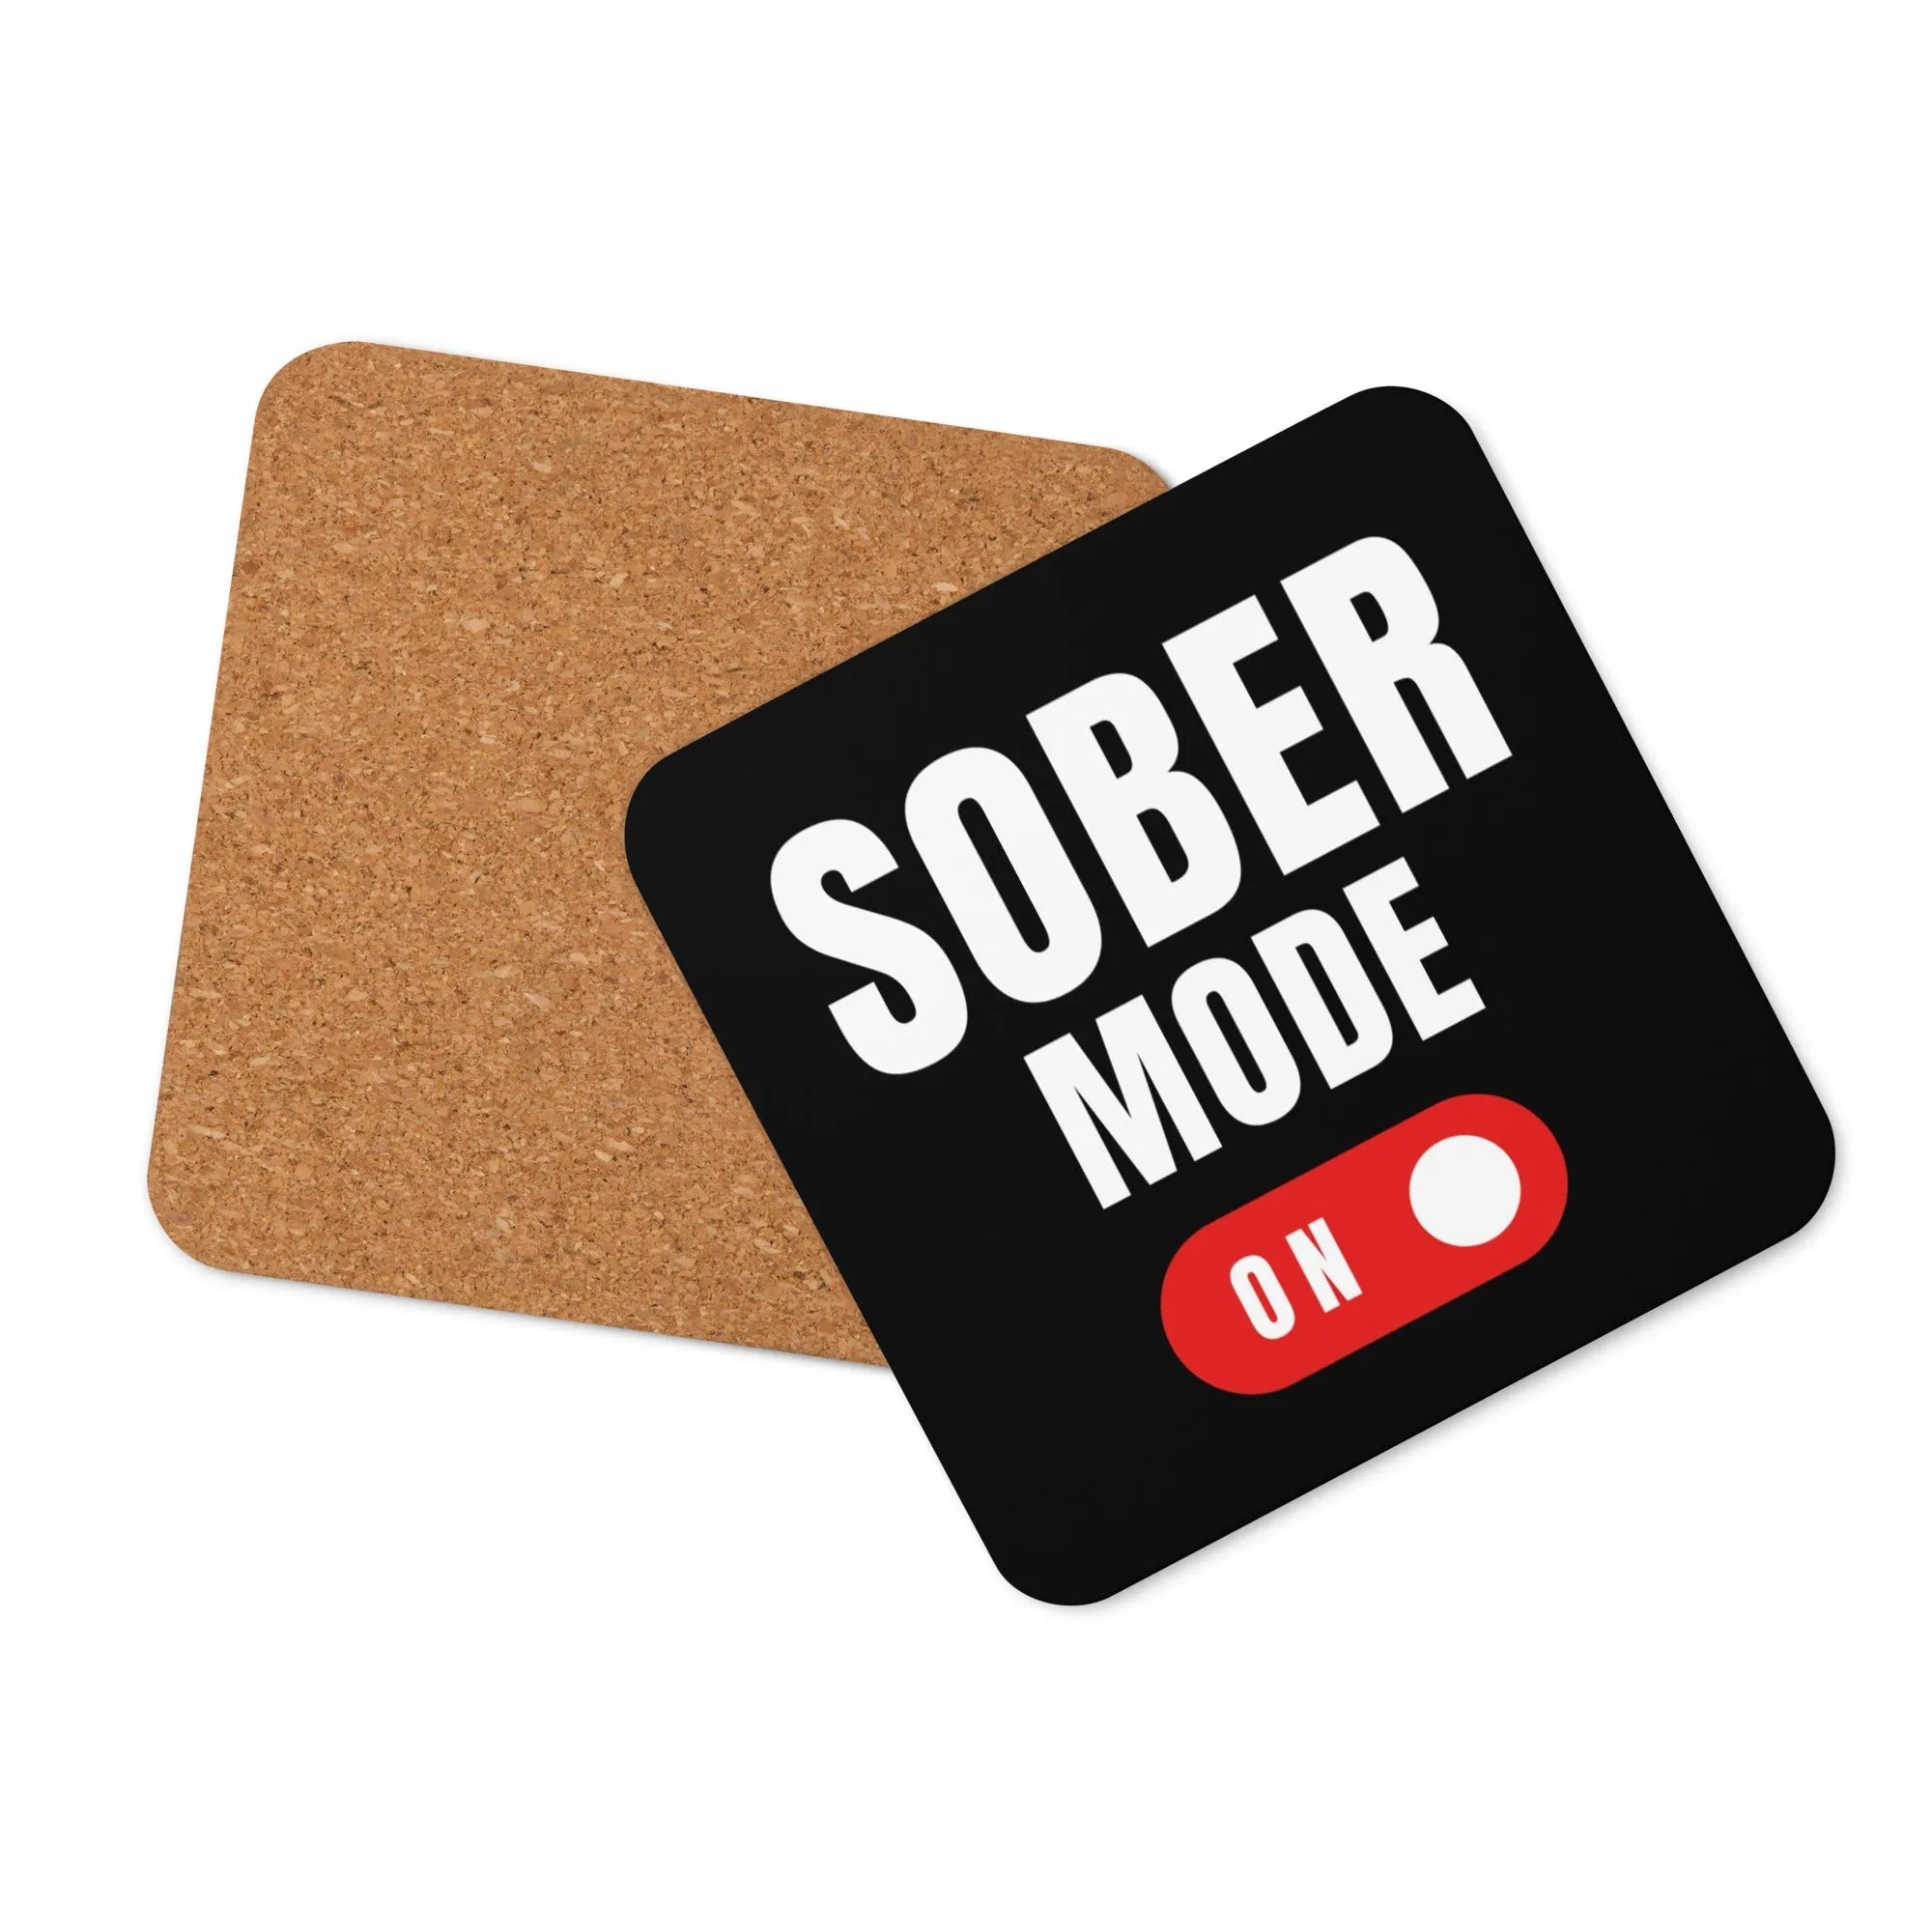 Sober Mode Activated - Cork-back coaster - Default Title | Sobervation